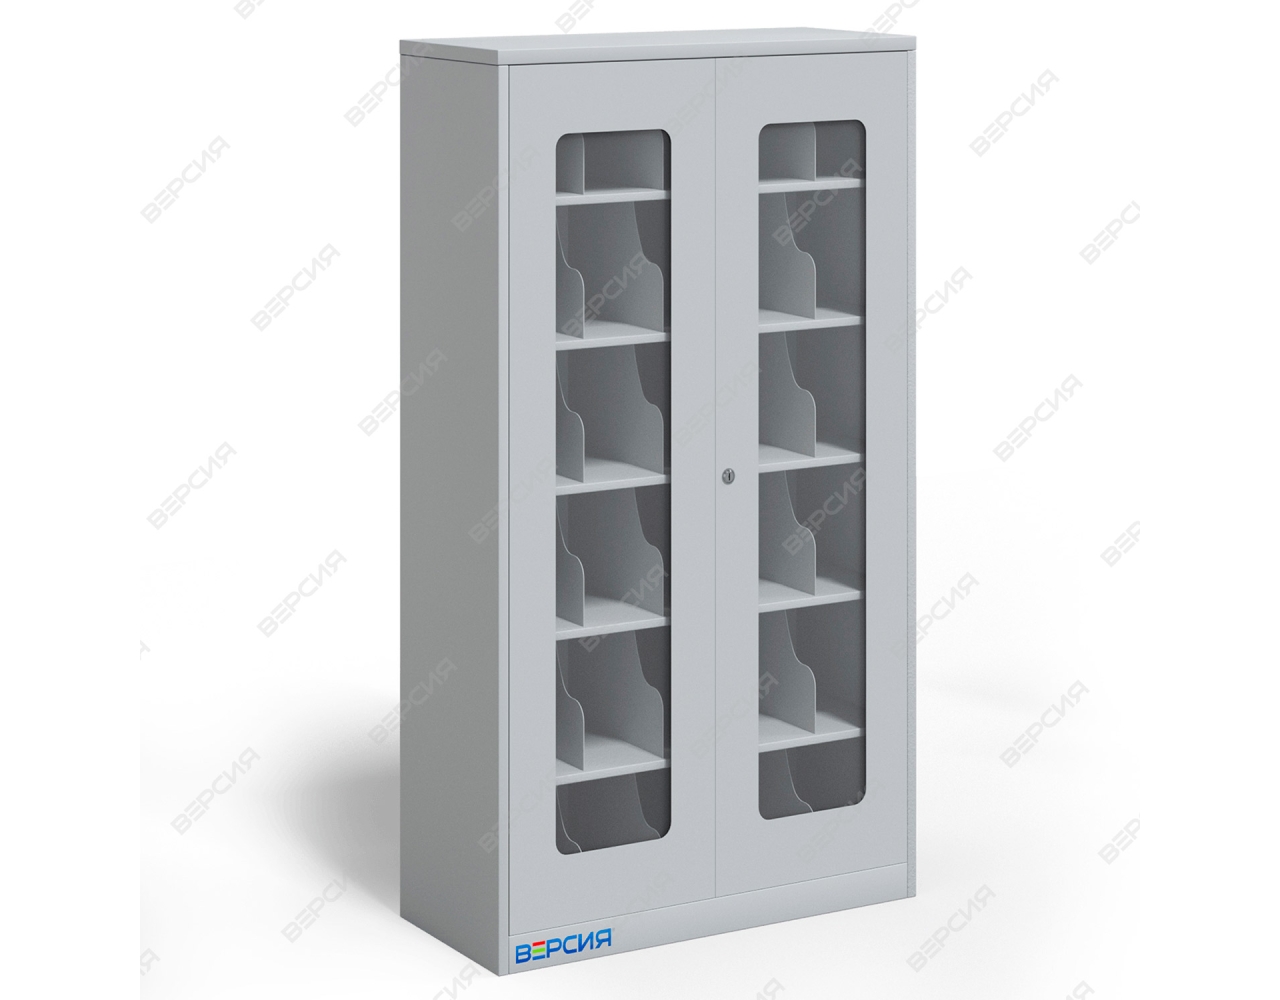 Шкаф металлический для хранения СИЗ на 30 ячеек, прозрачные акриловые дверцы 